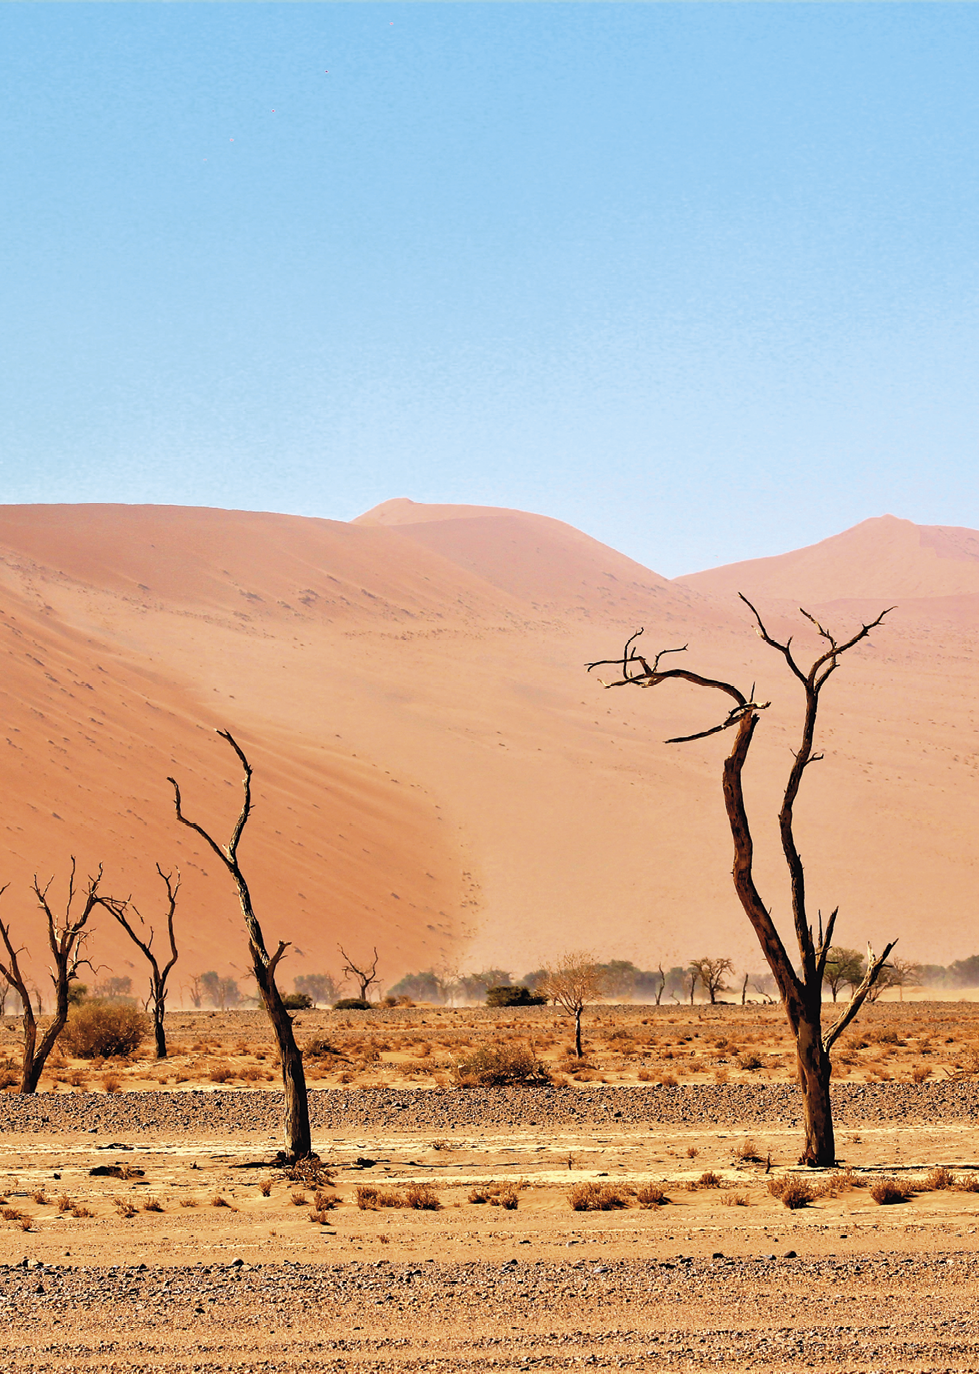 Fotografia. Em primeiro plano, área desértica, de solo argiloso, coberta de areia, com poucas árvores sem folhas e poucos arbustos. Ao fundo, dunas de areia e o céu azul.